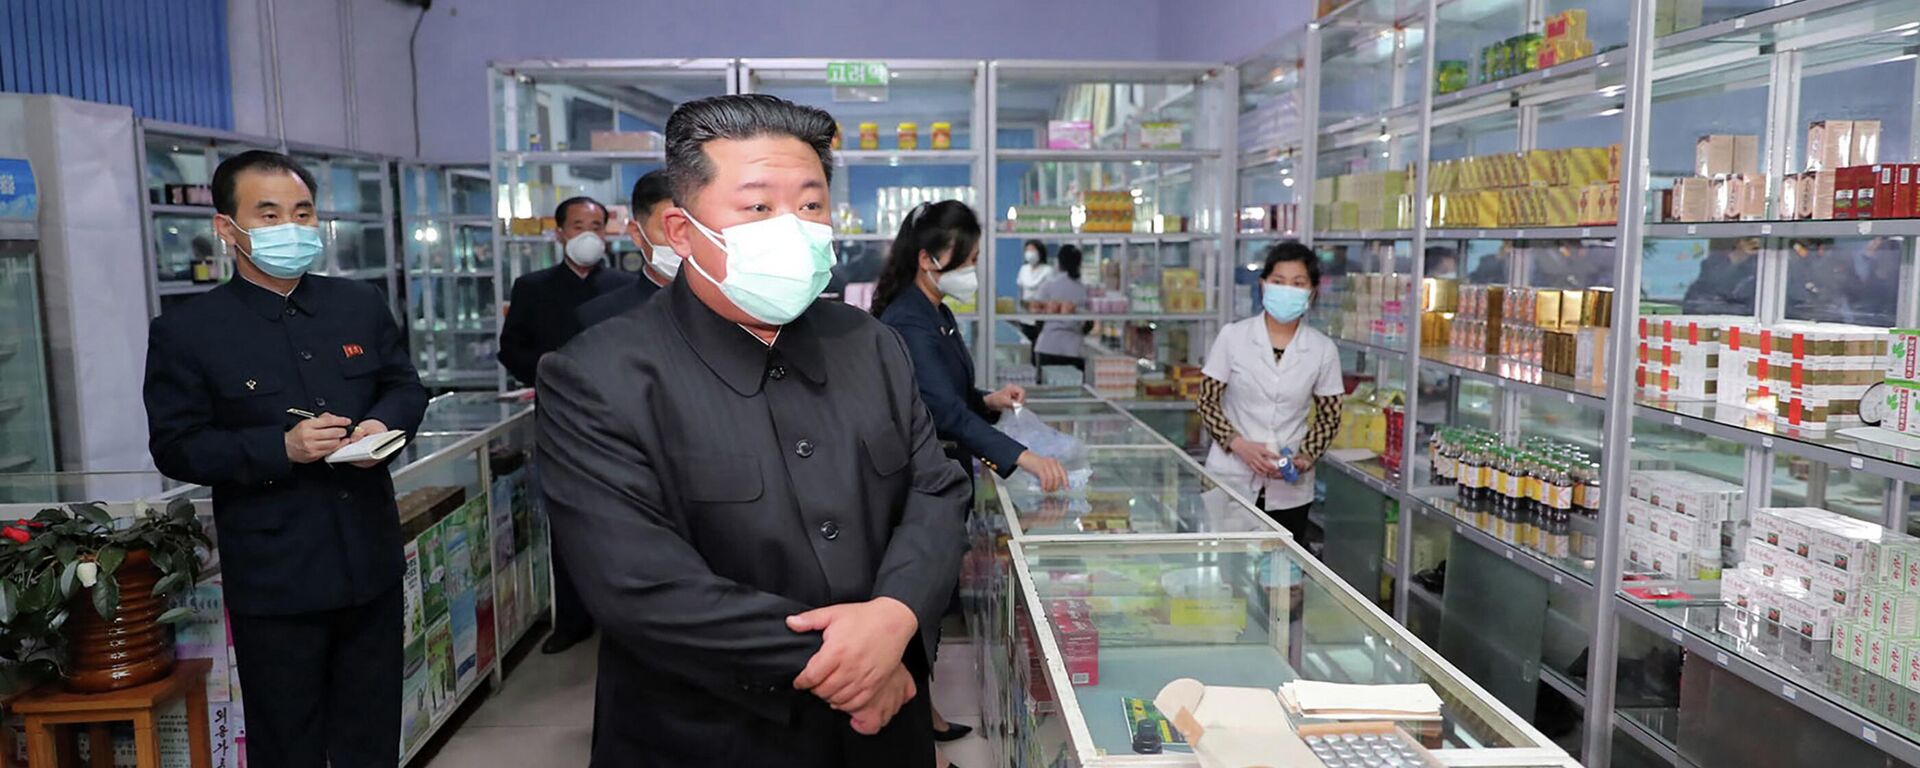 ارتفاع عدد حالات الإصابة بفيروس كورونا في بيونغ يانغ، كوريا الشمالية 15 مايو 2022 - سبوتنيك عربي, 1920, 29.05.2022